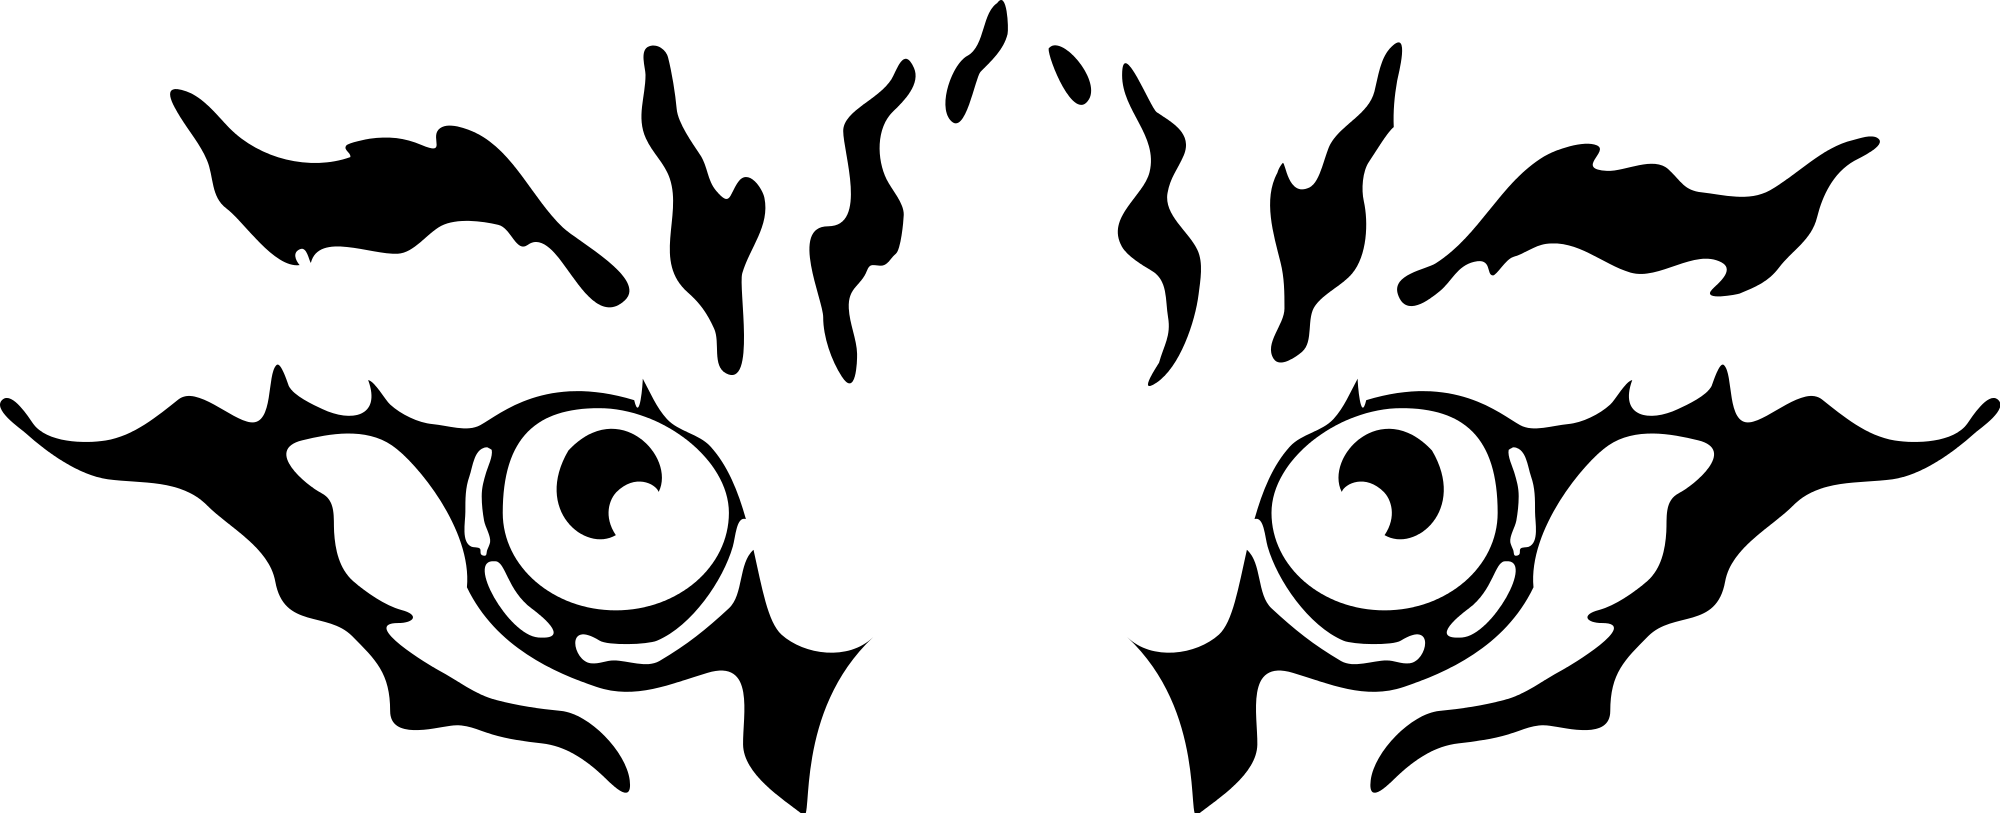 tiger clip art logo - photo #43